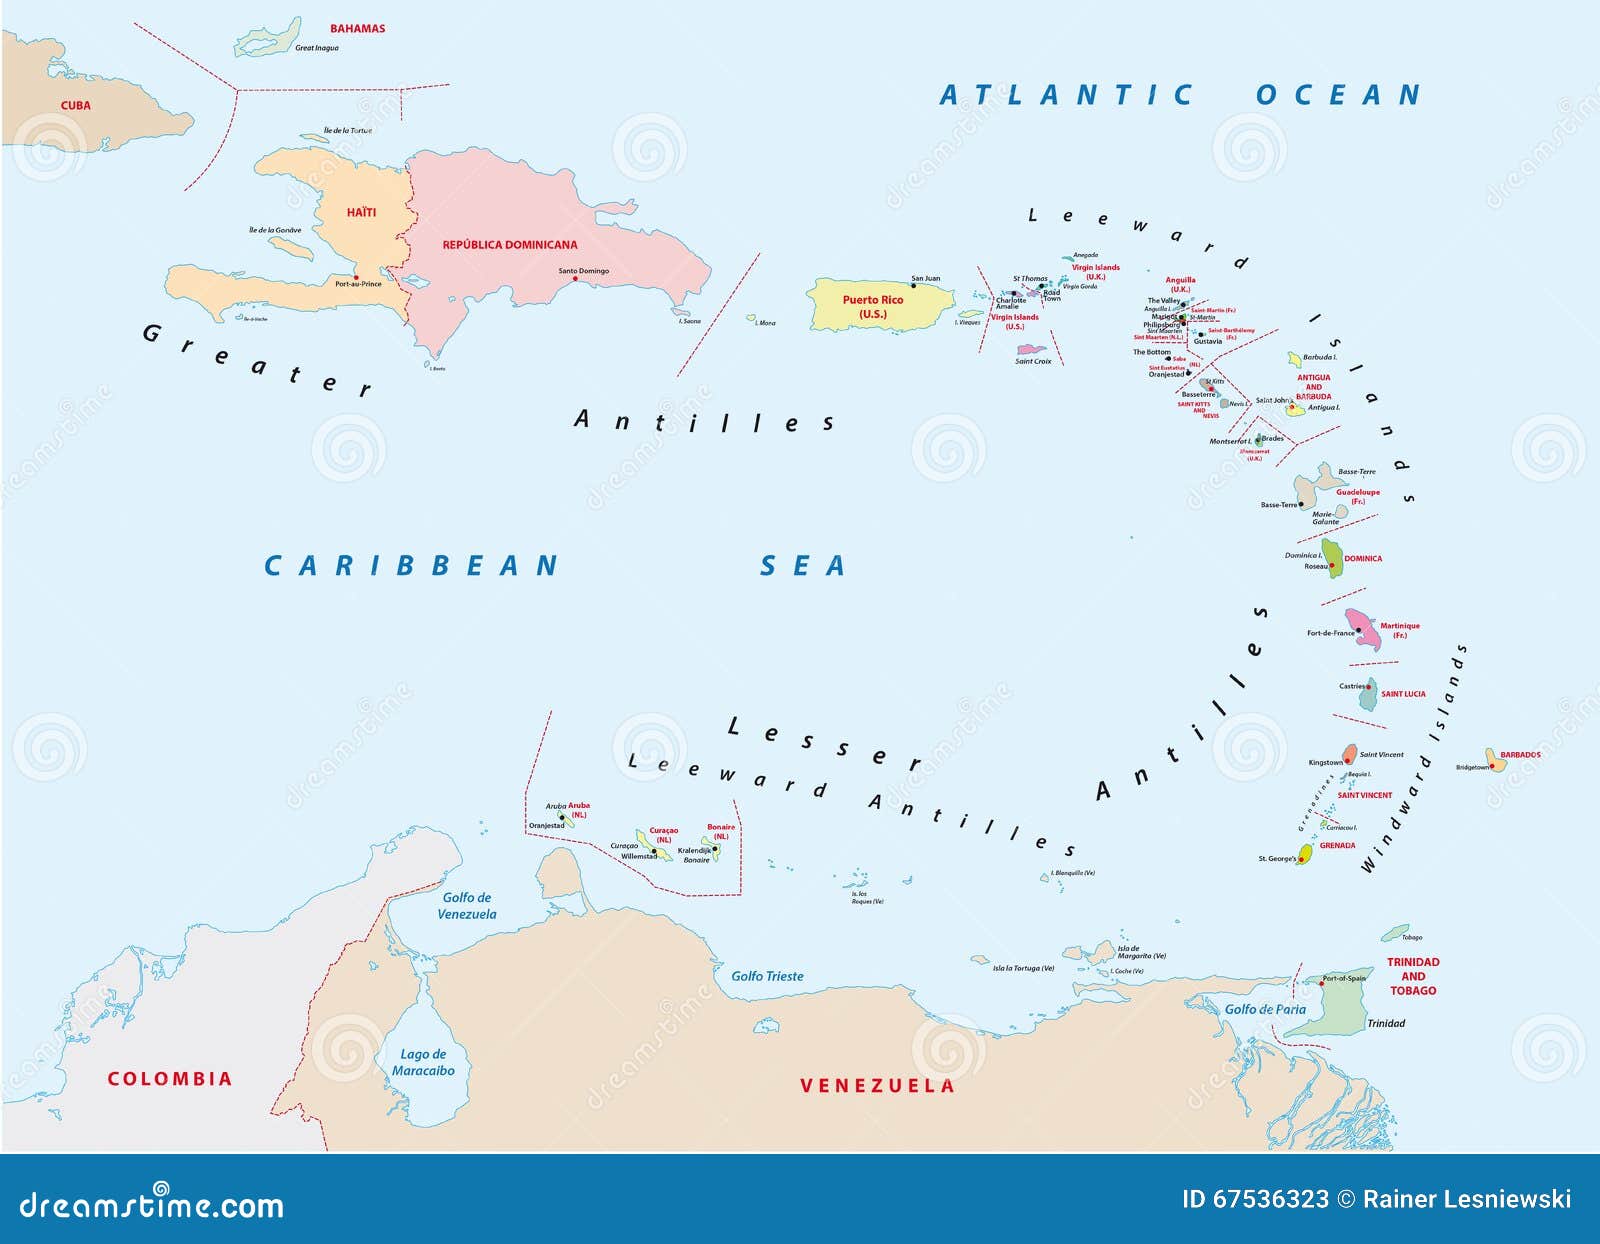 Южная часть архипелага малых антильских островов. Где находится малые Антильские острова на карте Северной Америки. Малые Антильские острова на контурной карте. Где находится малые Антильские острова на карте Южной Америки. Большие Антильские острова на контурной карте 6.